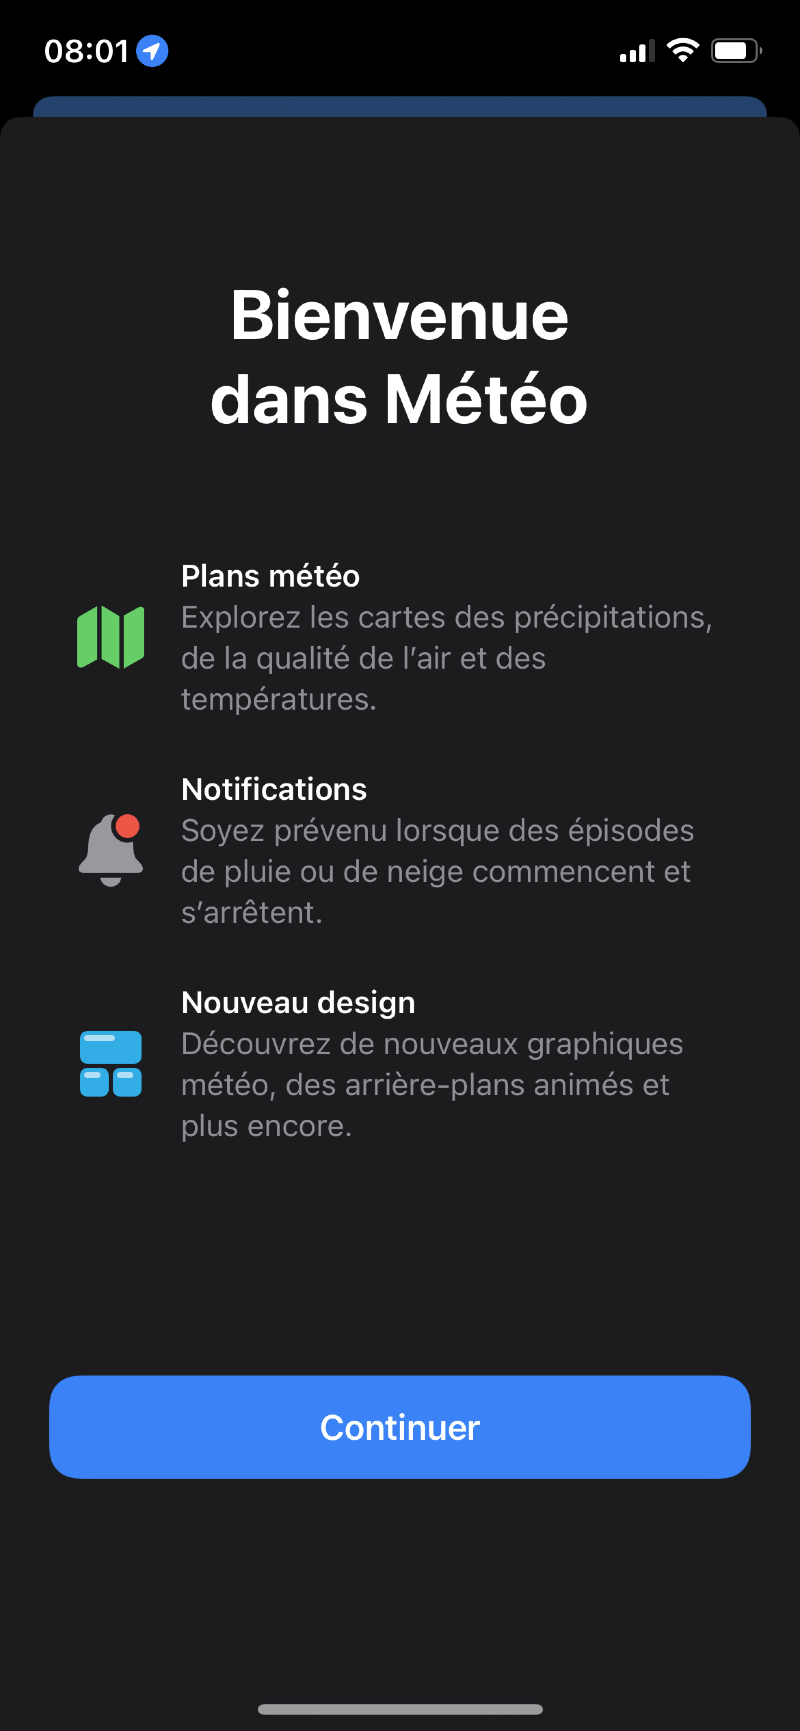 Ilustración: Nuevo en iOS / iPadOS 15 b & ecirc; ta 2: SharePlay, Memojis, iCloud Private Relay